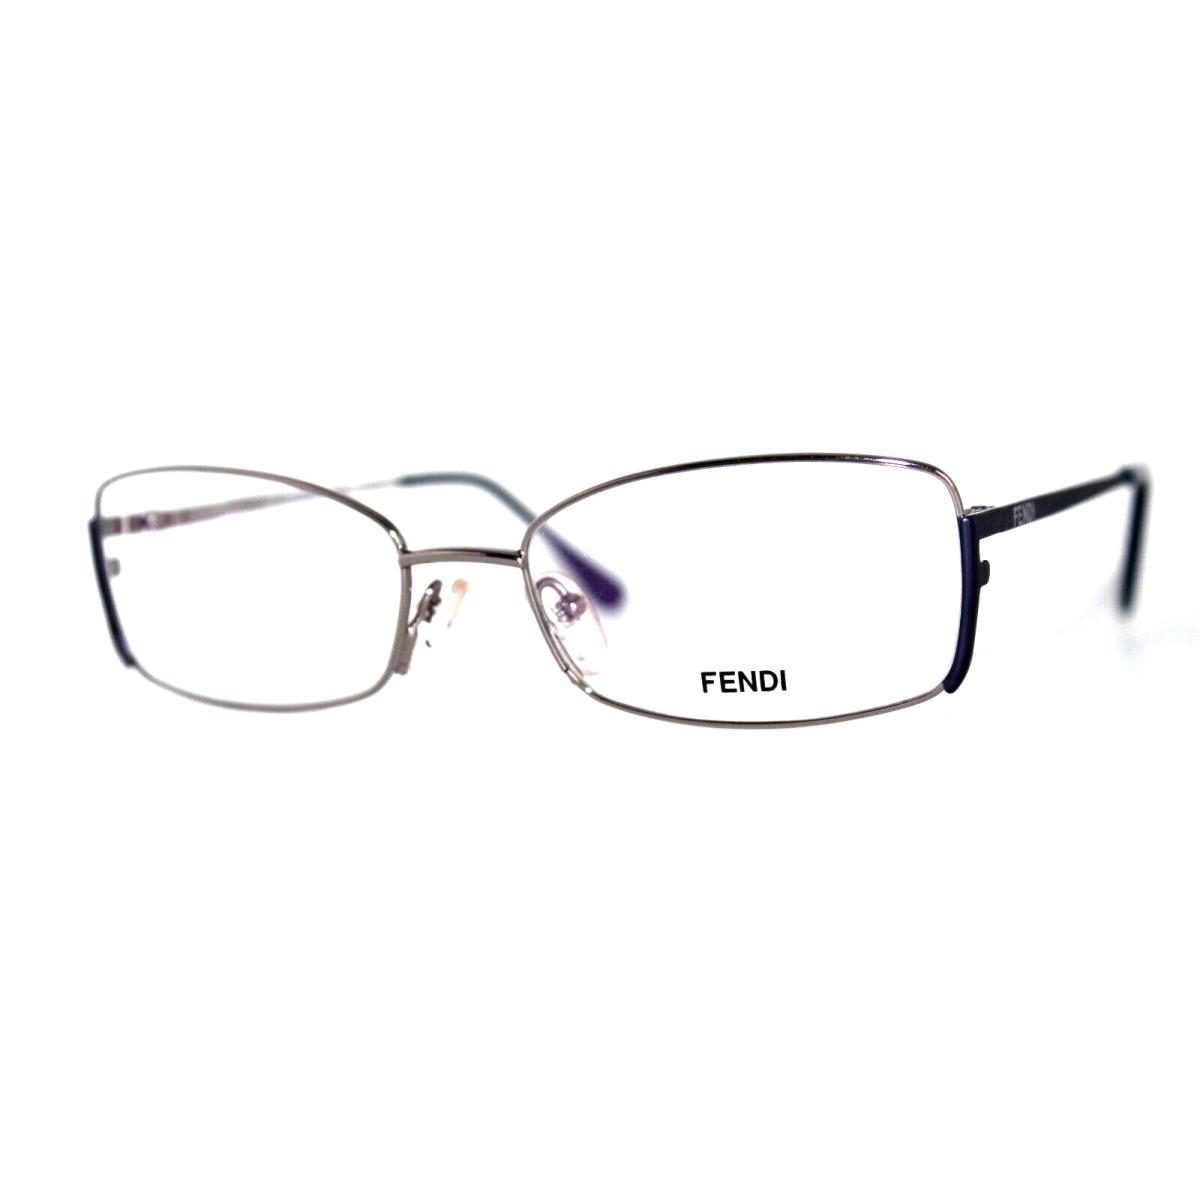 Fendi F960 030 Silver Navy Eyeglasses Frames 52-16-135MM W/case